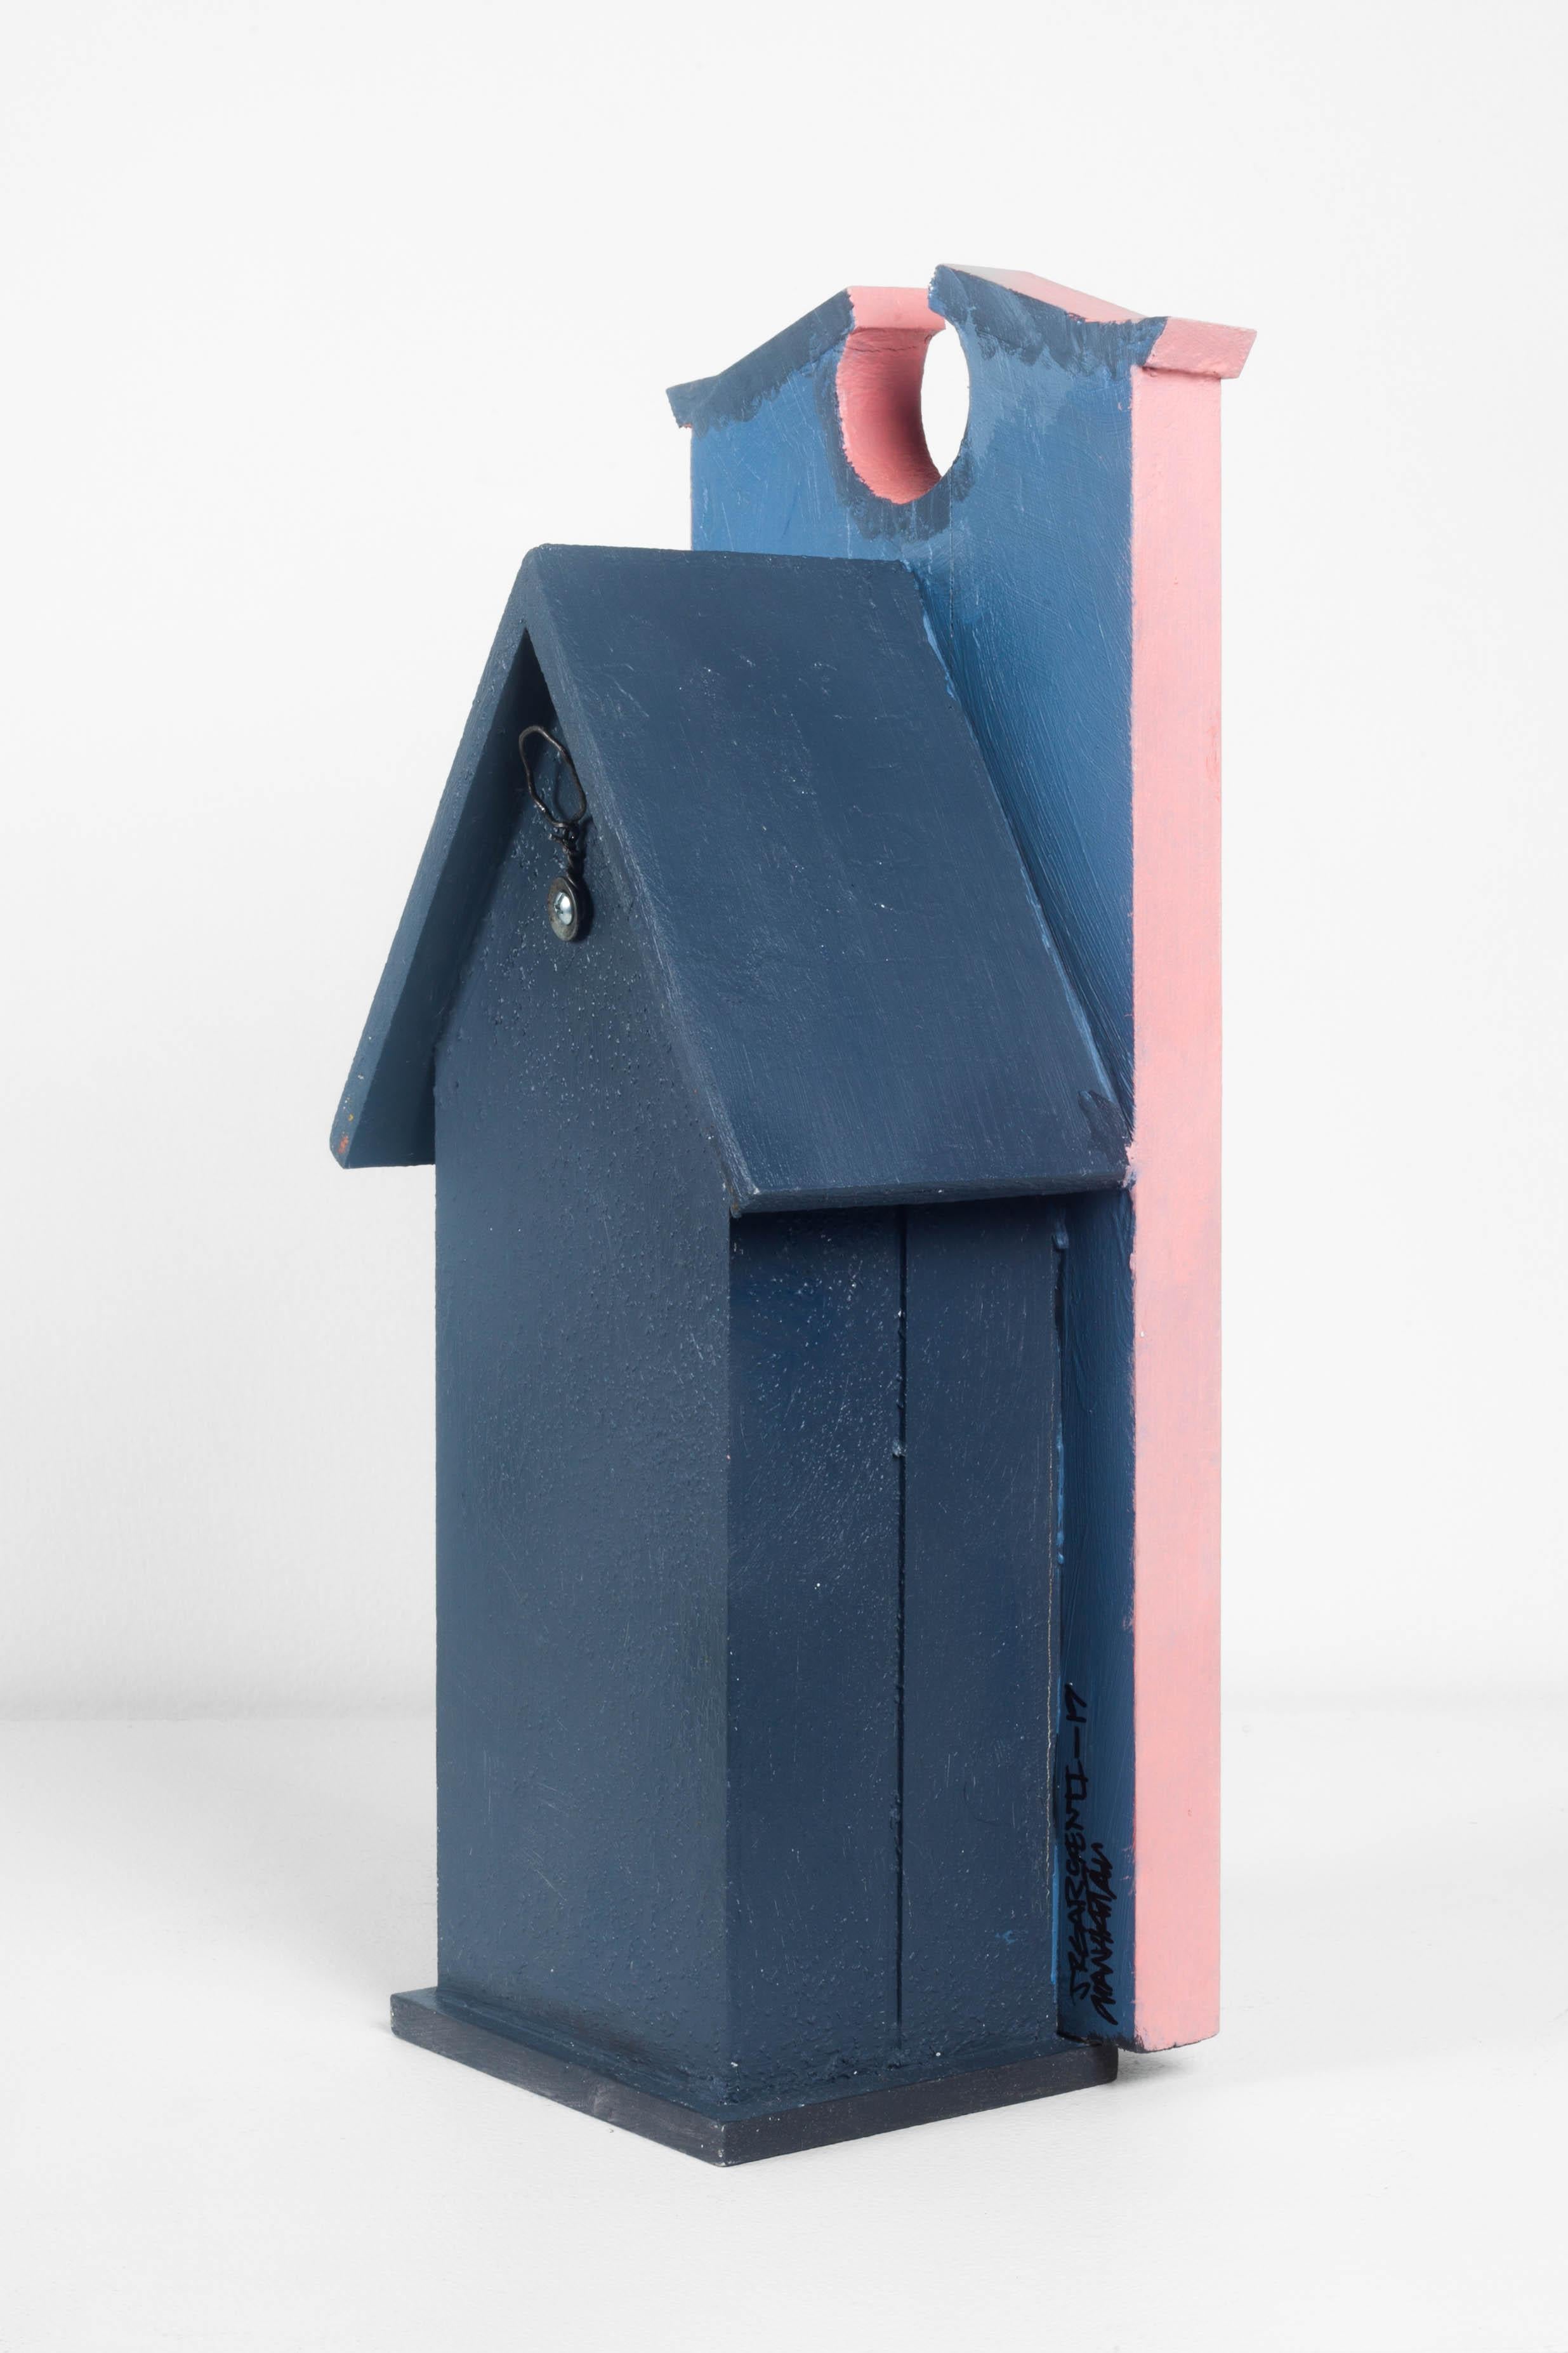 Américain « The Manhattan birdhouse » de Jason Sargenti, 2020, États-Unis en vente